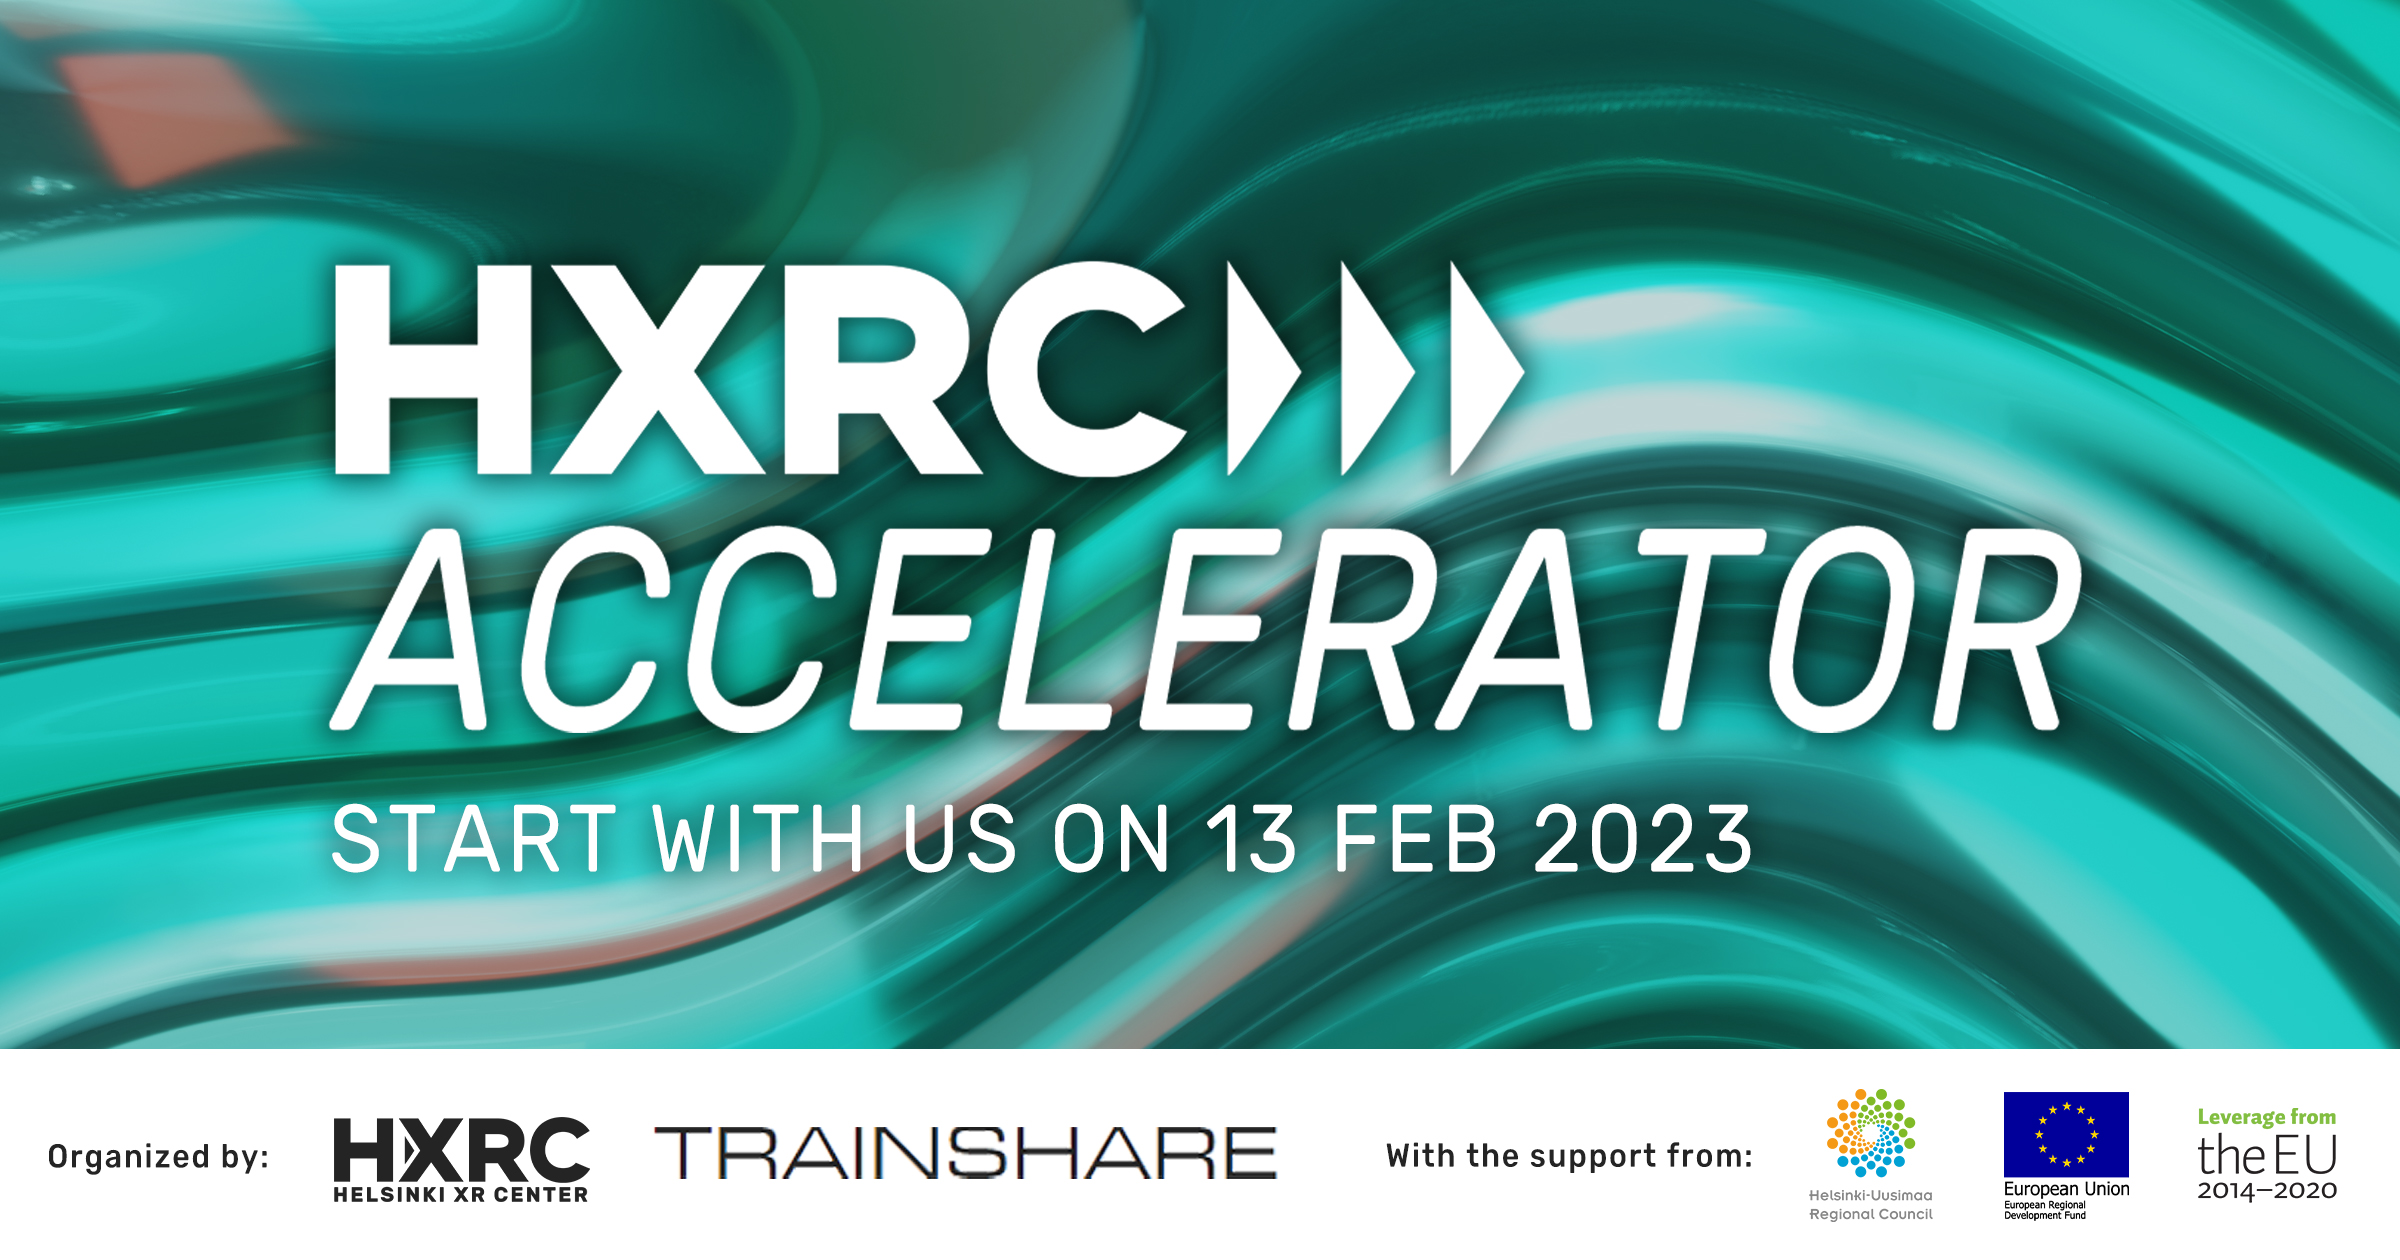 Helsinki XR Center's XR Accelerator program, start with us on 13 February 2023!